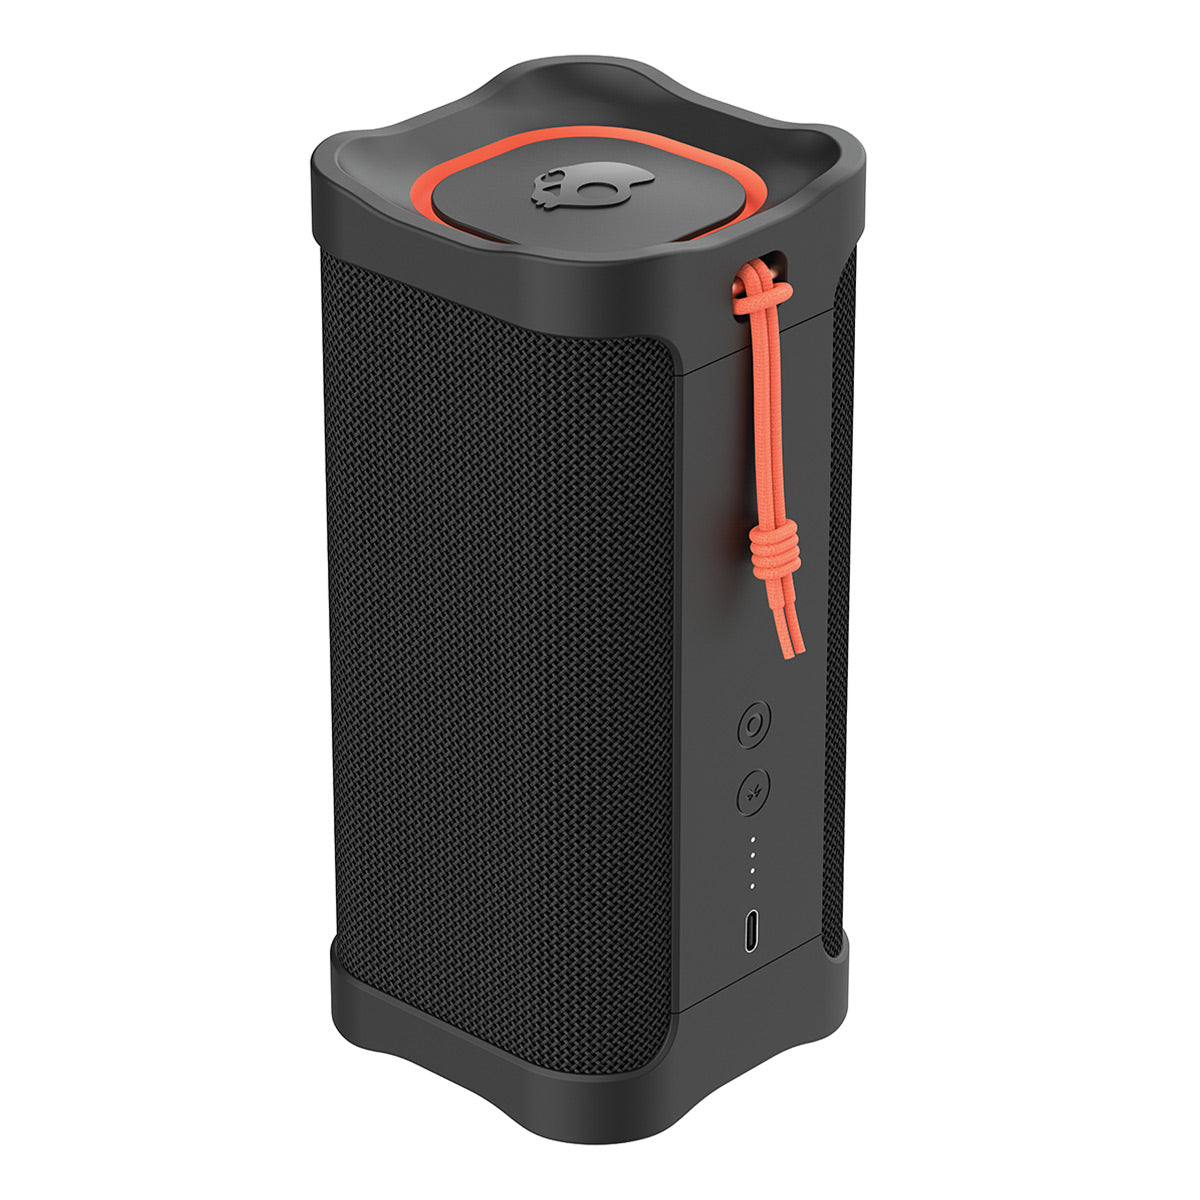 JBL Flip Bluetooth Wireless Portable Stereo Speaker